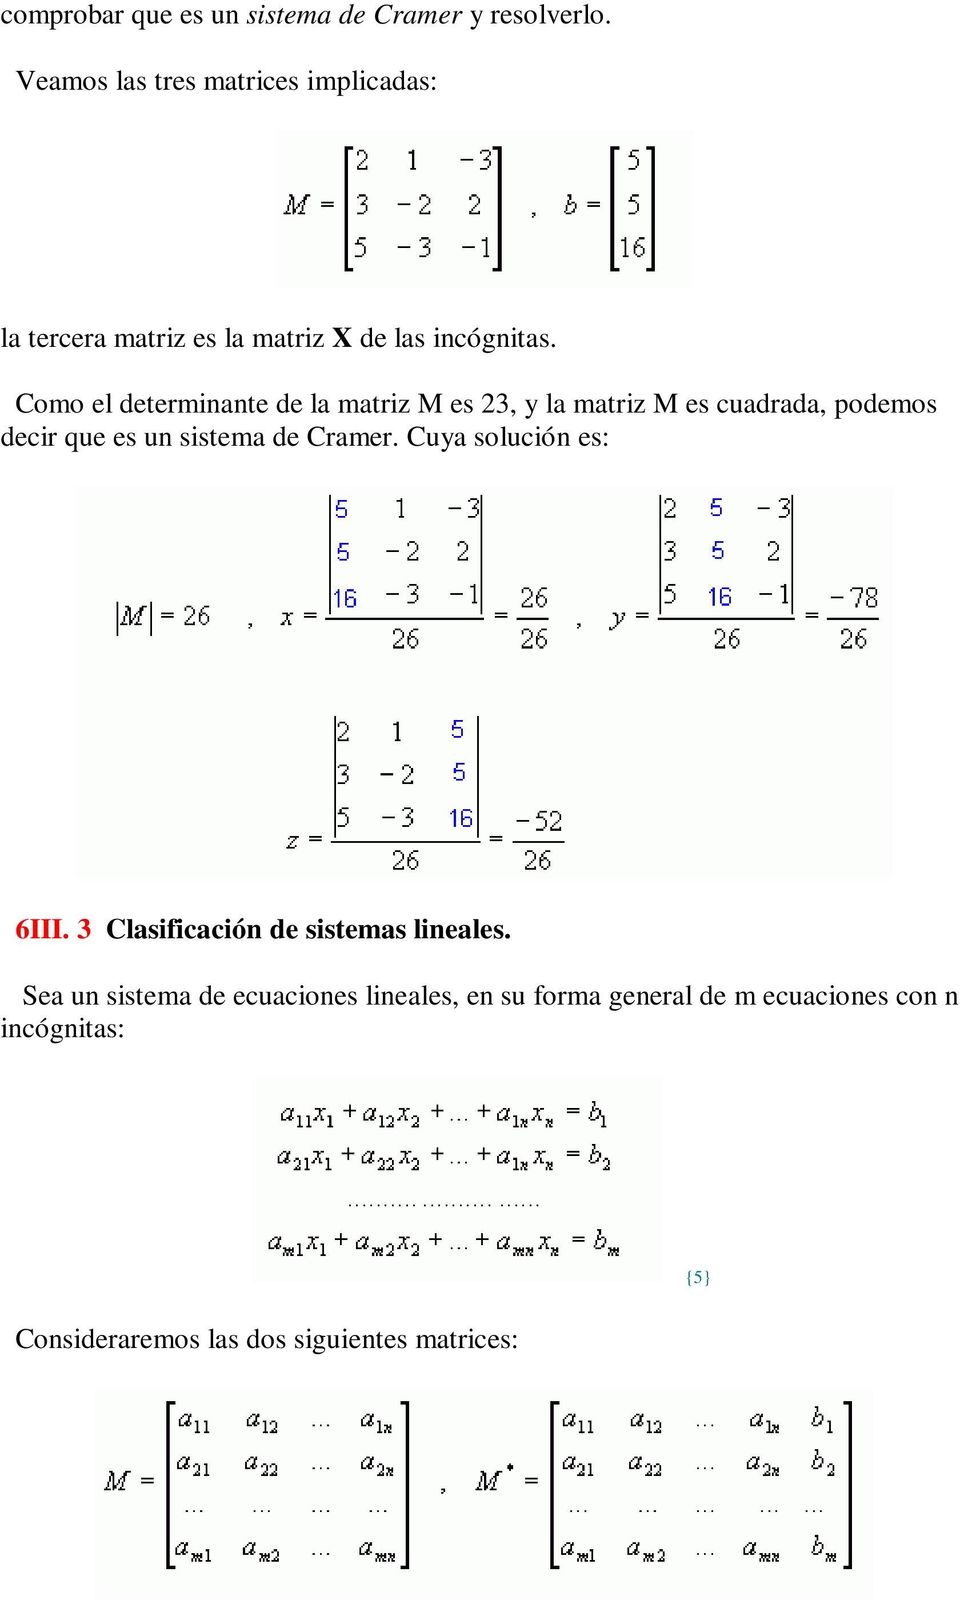 Como el determinante de la matriz M es 23, y la matriz M es cuadrada, podemos decir que es un sistema de Cramer.